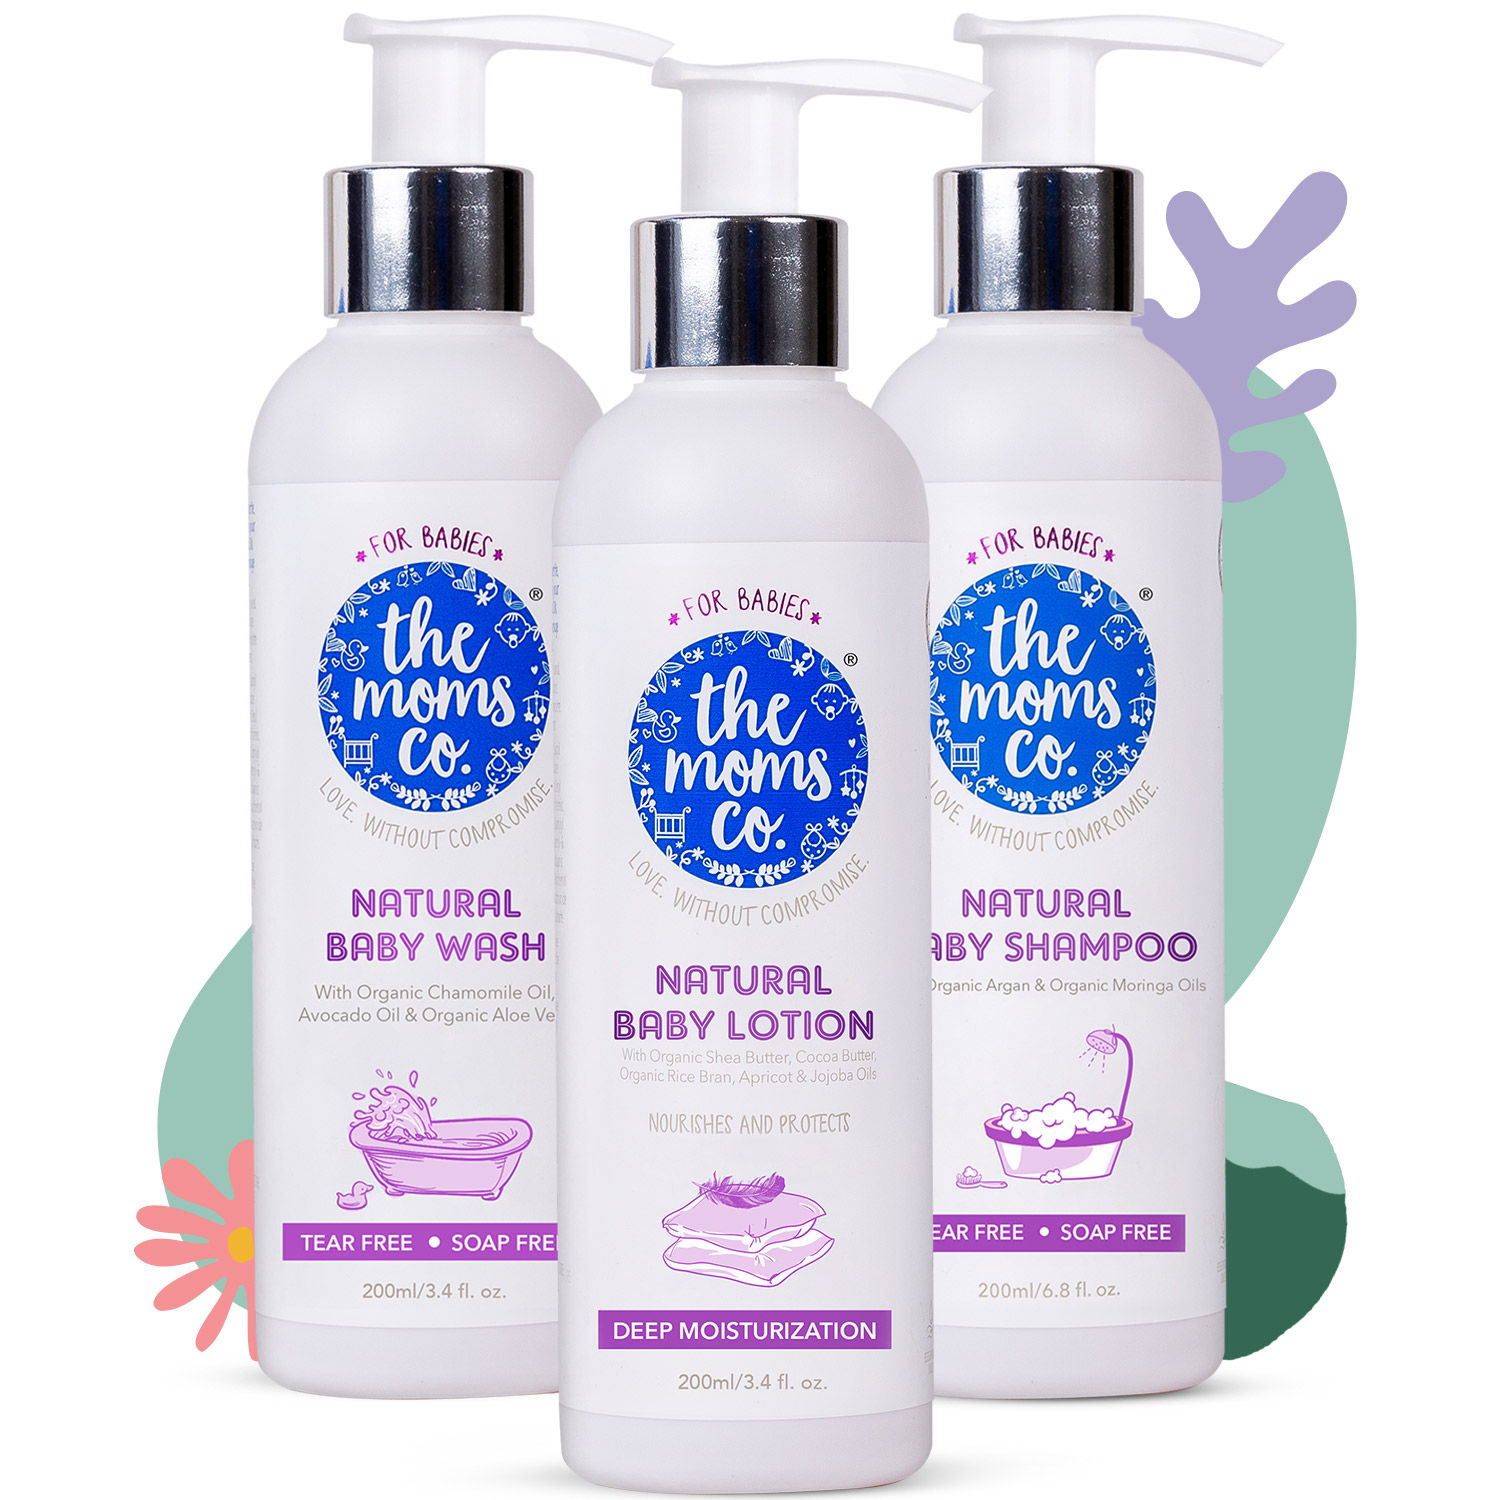 The Moms Co. Natural Baby Wash + Natural Baby Shampoo + Natural Baby Lotion